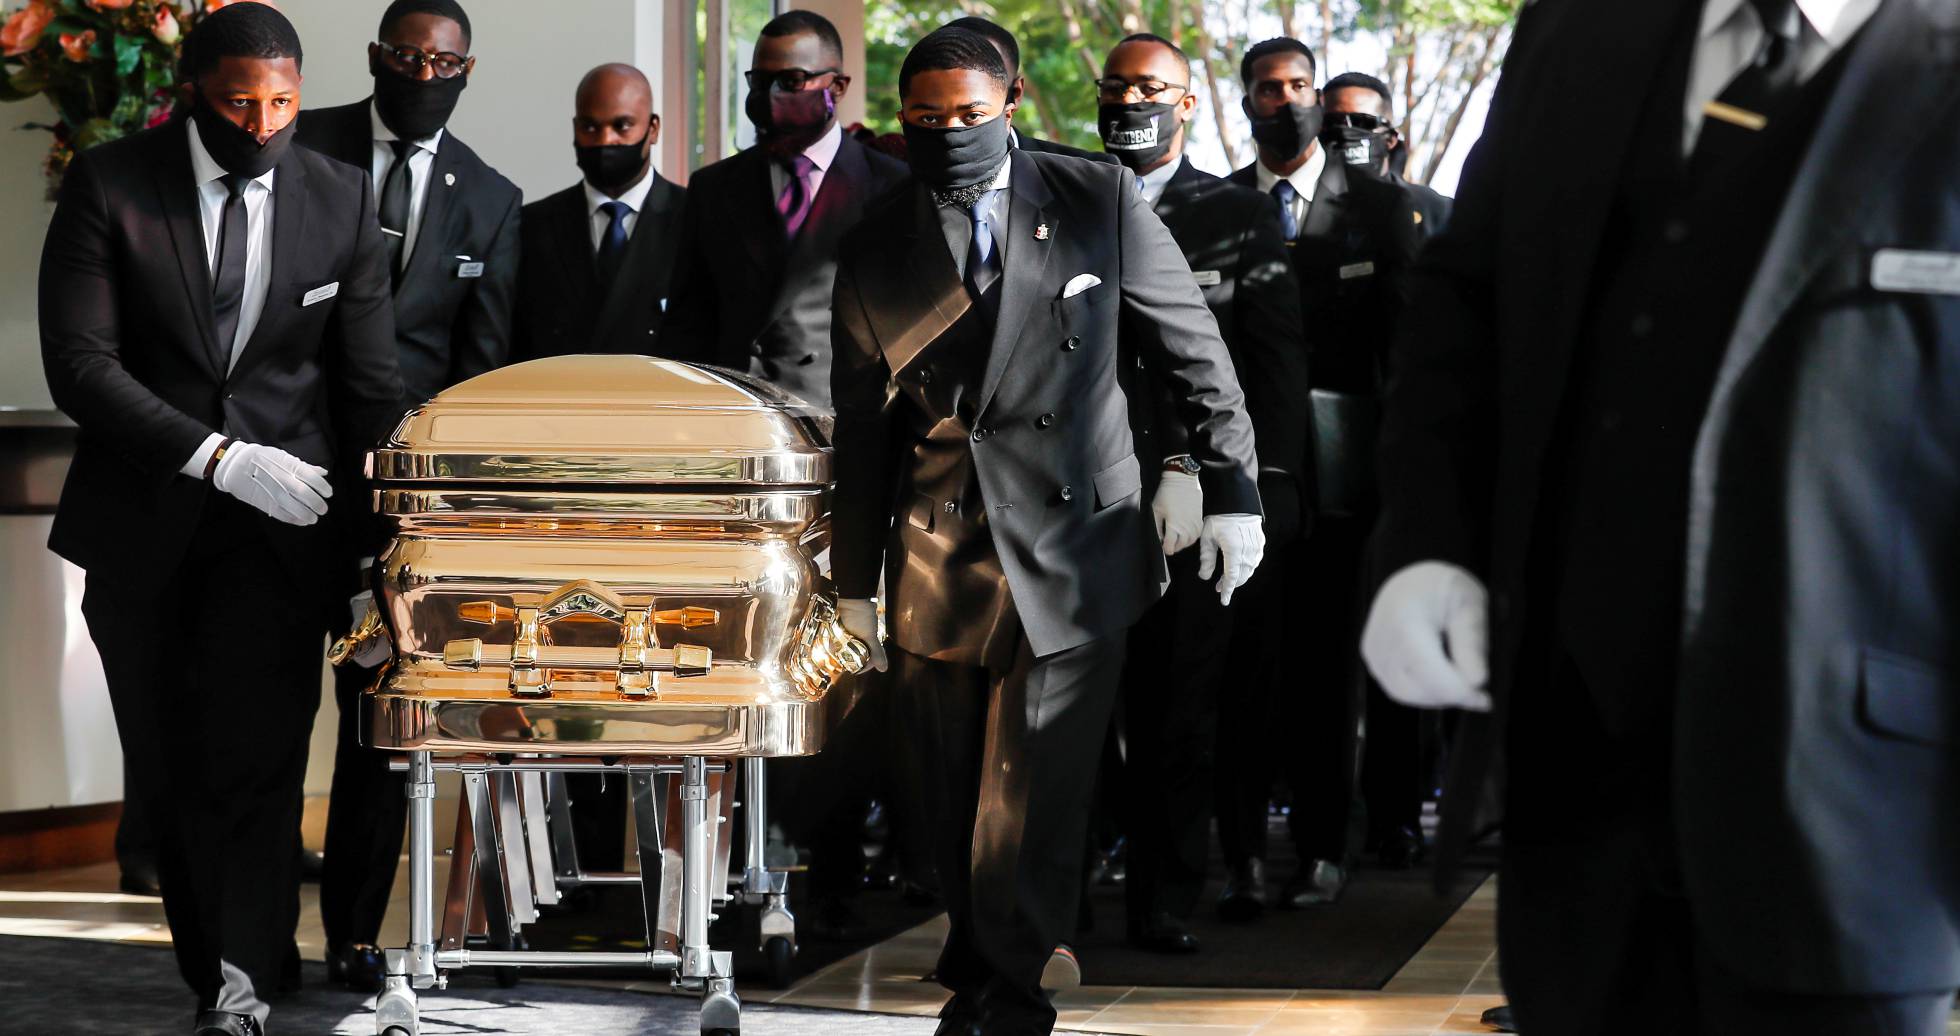 Fotos: El funeral de George Floyd, en imágenes | Internacional ...